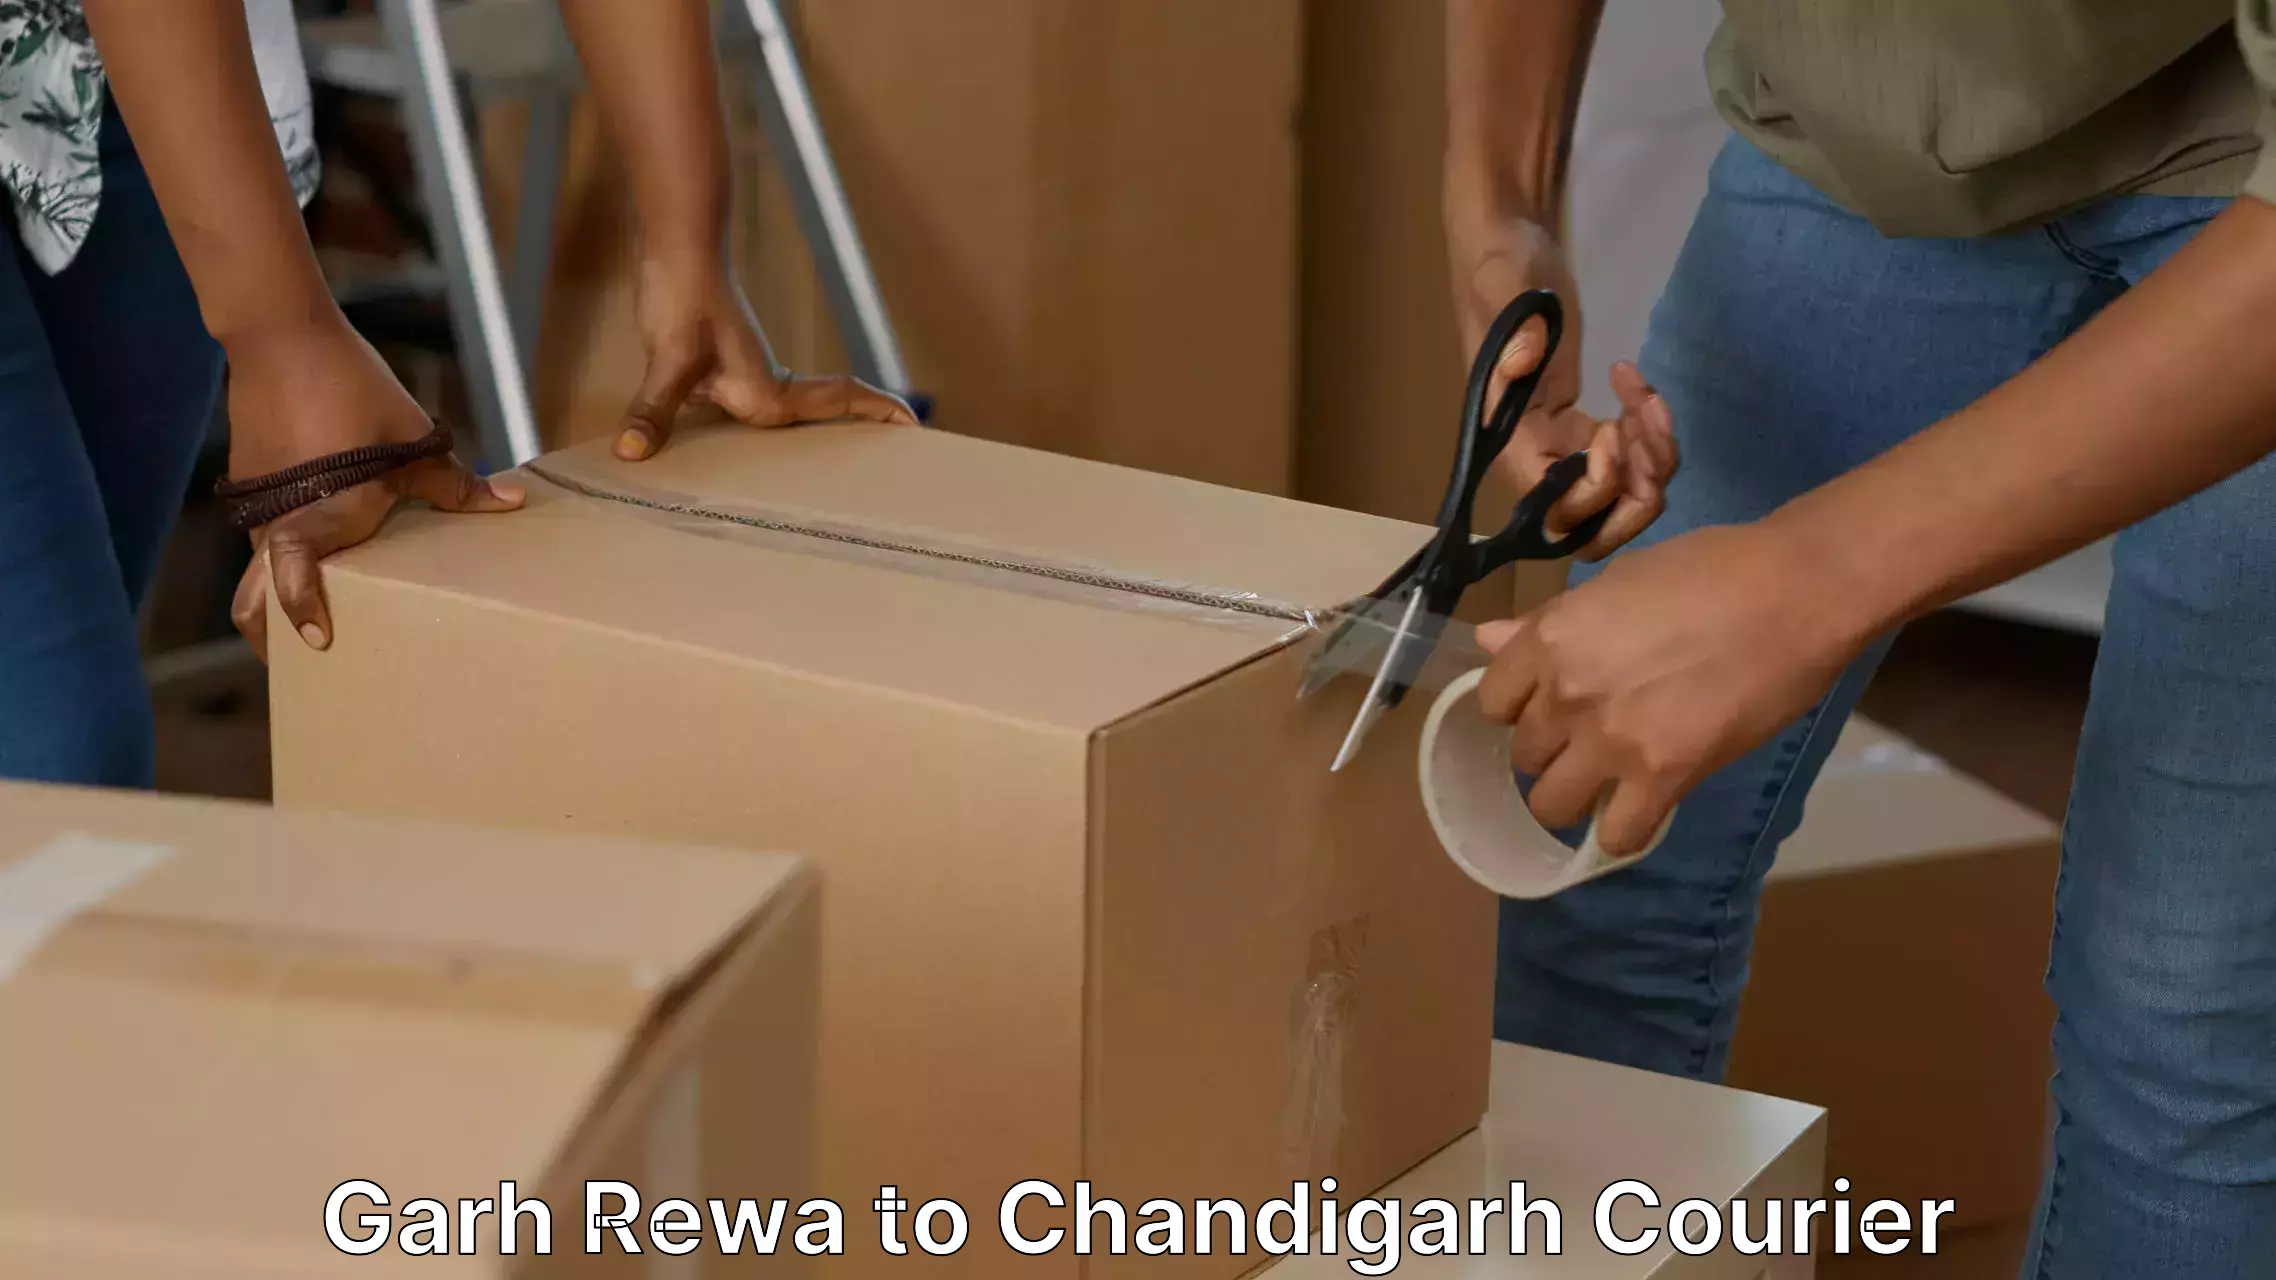 Efficient relocation services Garh Rewa to Chandigarh